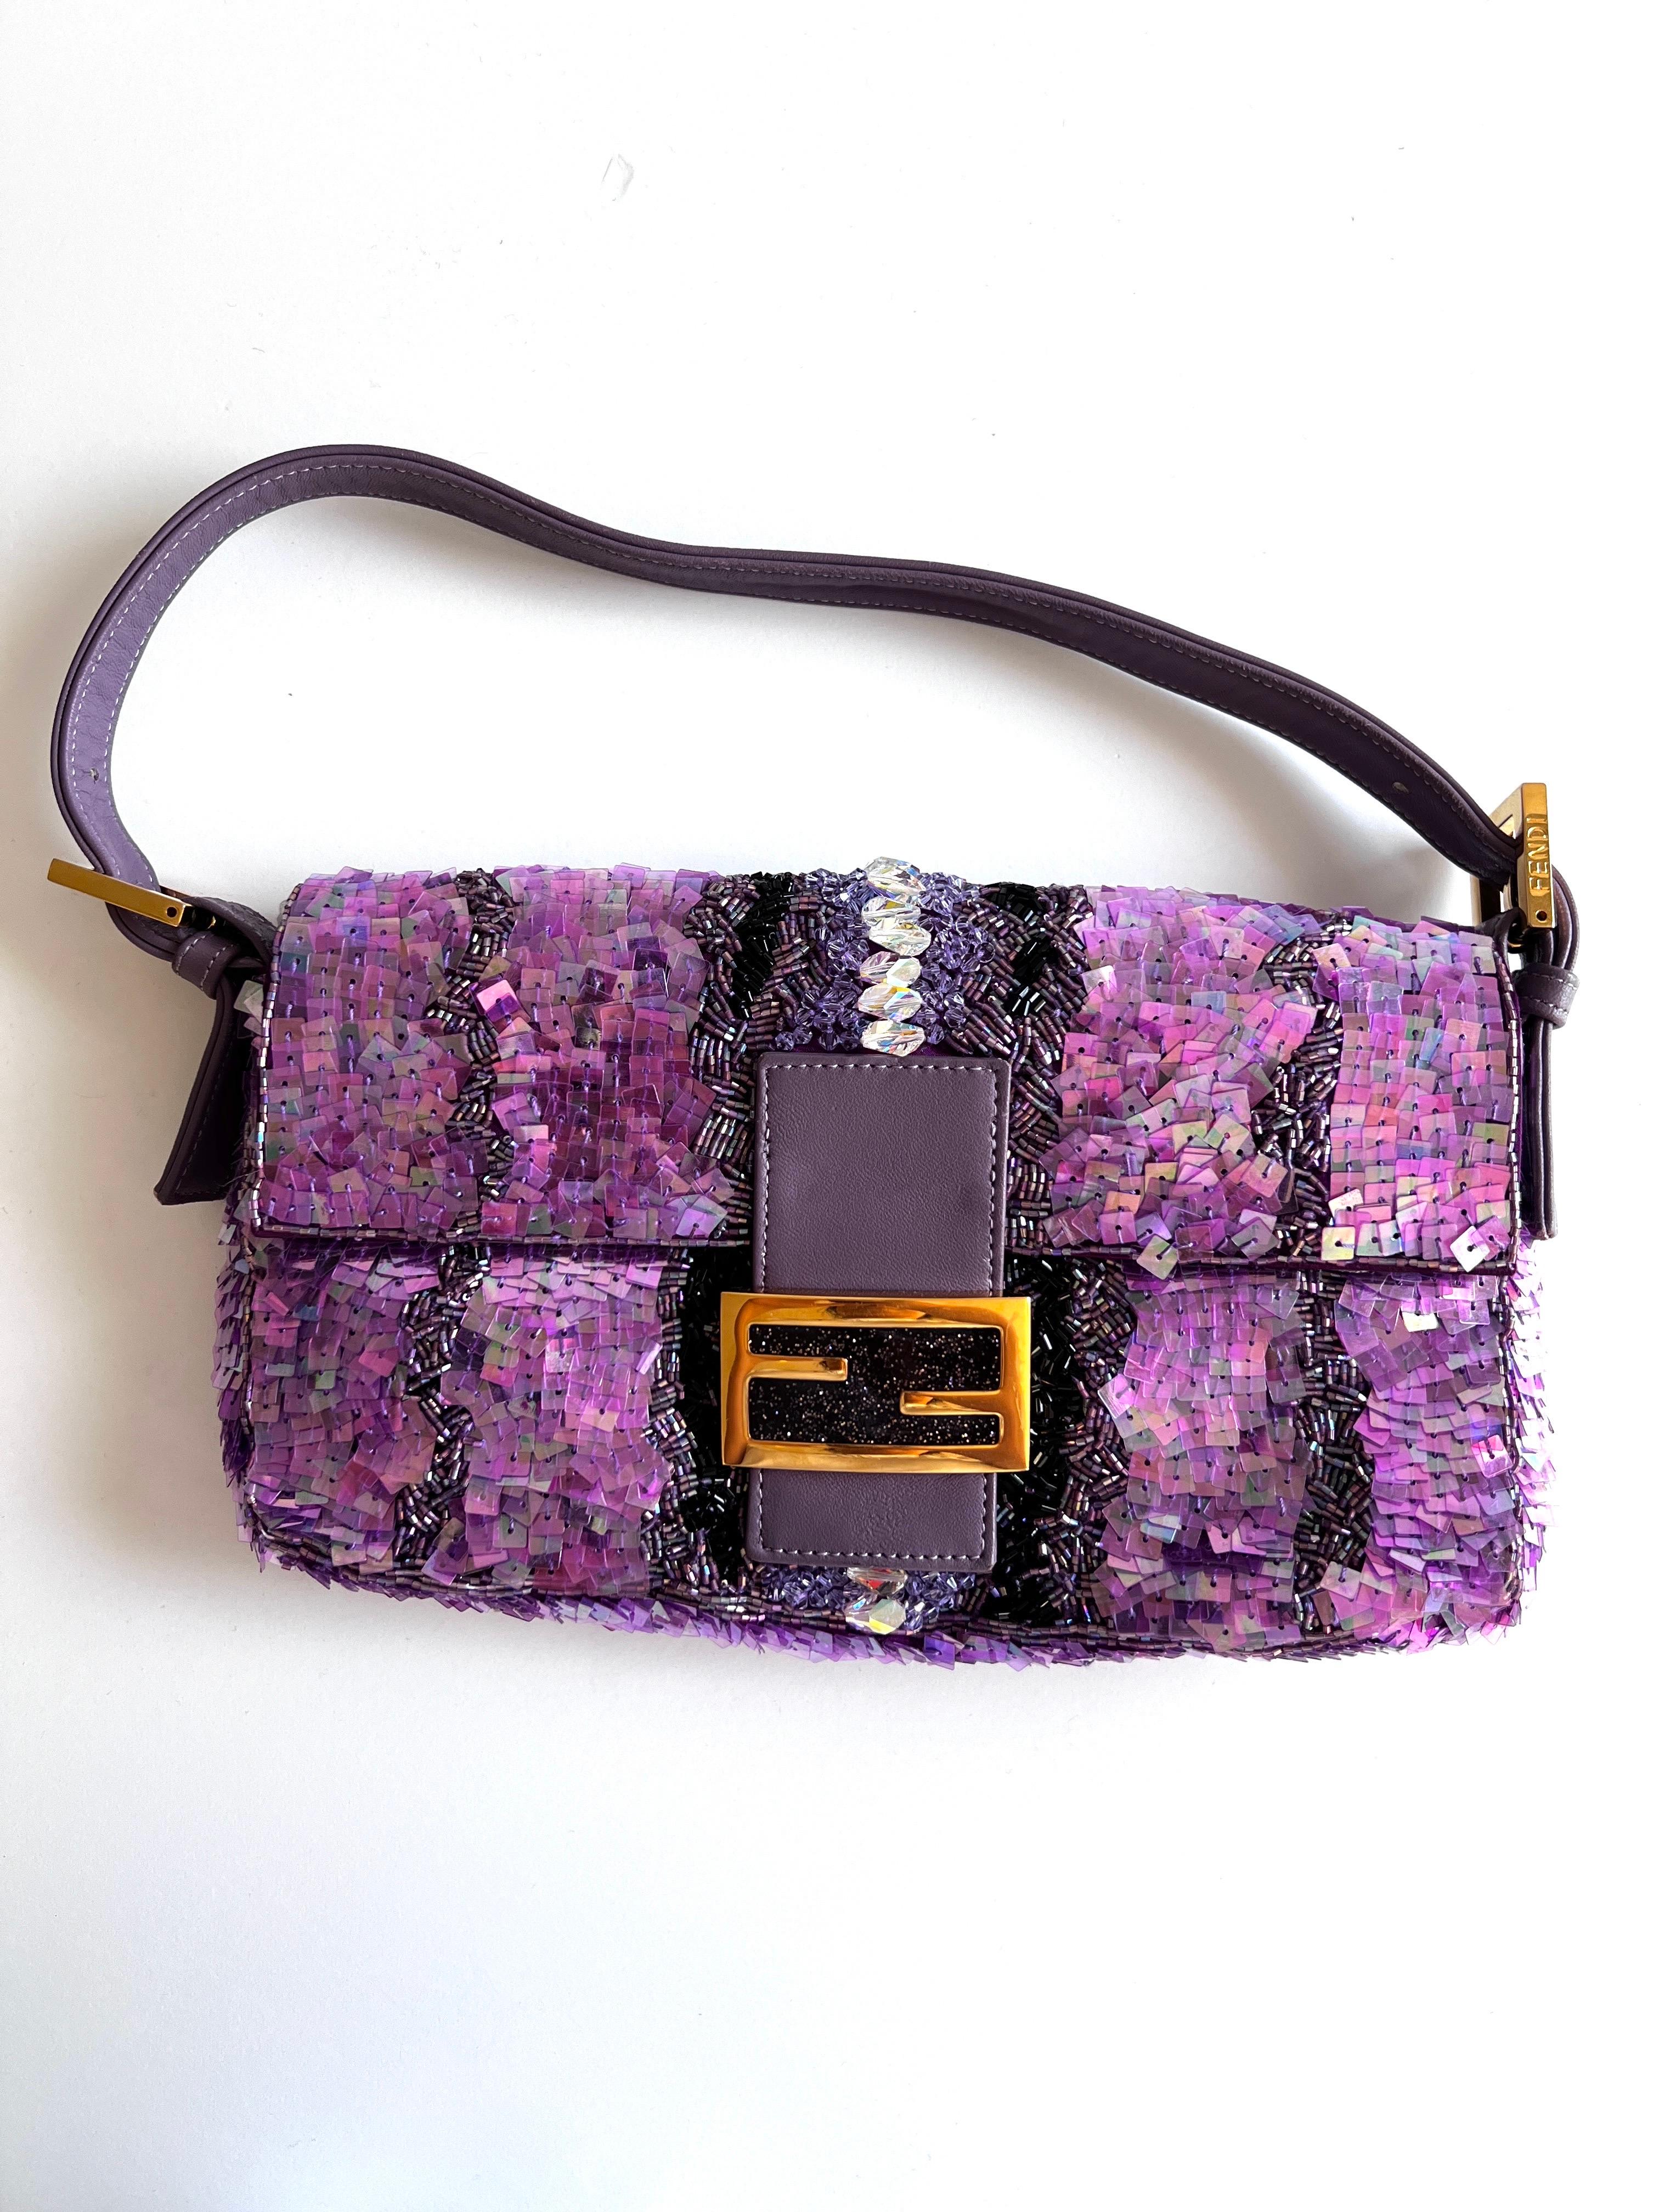 Die Fendi Baguette mit lila Pailletten und Strasssteinen. Diese exquisite, mit viel Liebe zum Detail gefertigte Handtasche ist ein Beweis für die unvergleichliche Handwerkskunst und den Stil von Fendi.

Jede Paillette ist von Hand auf den prächtigen